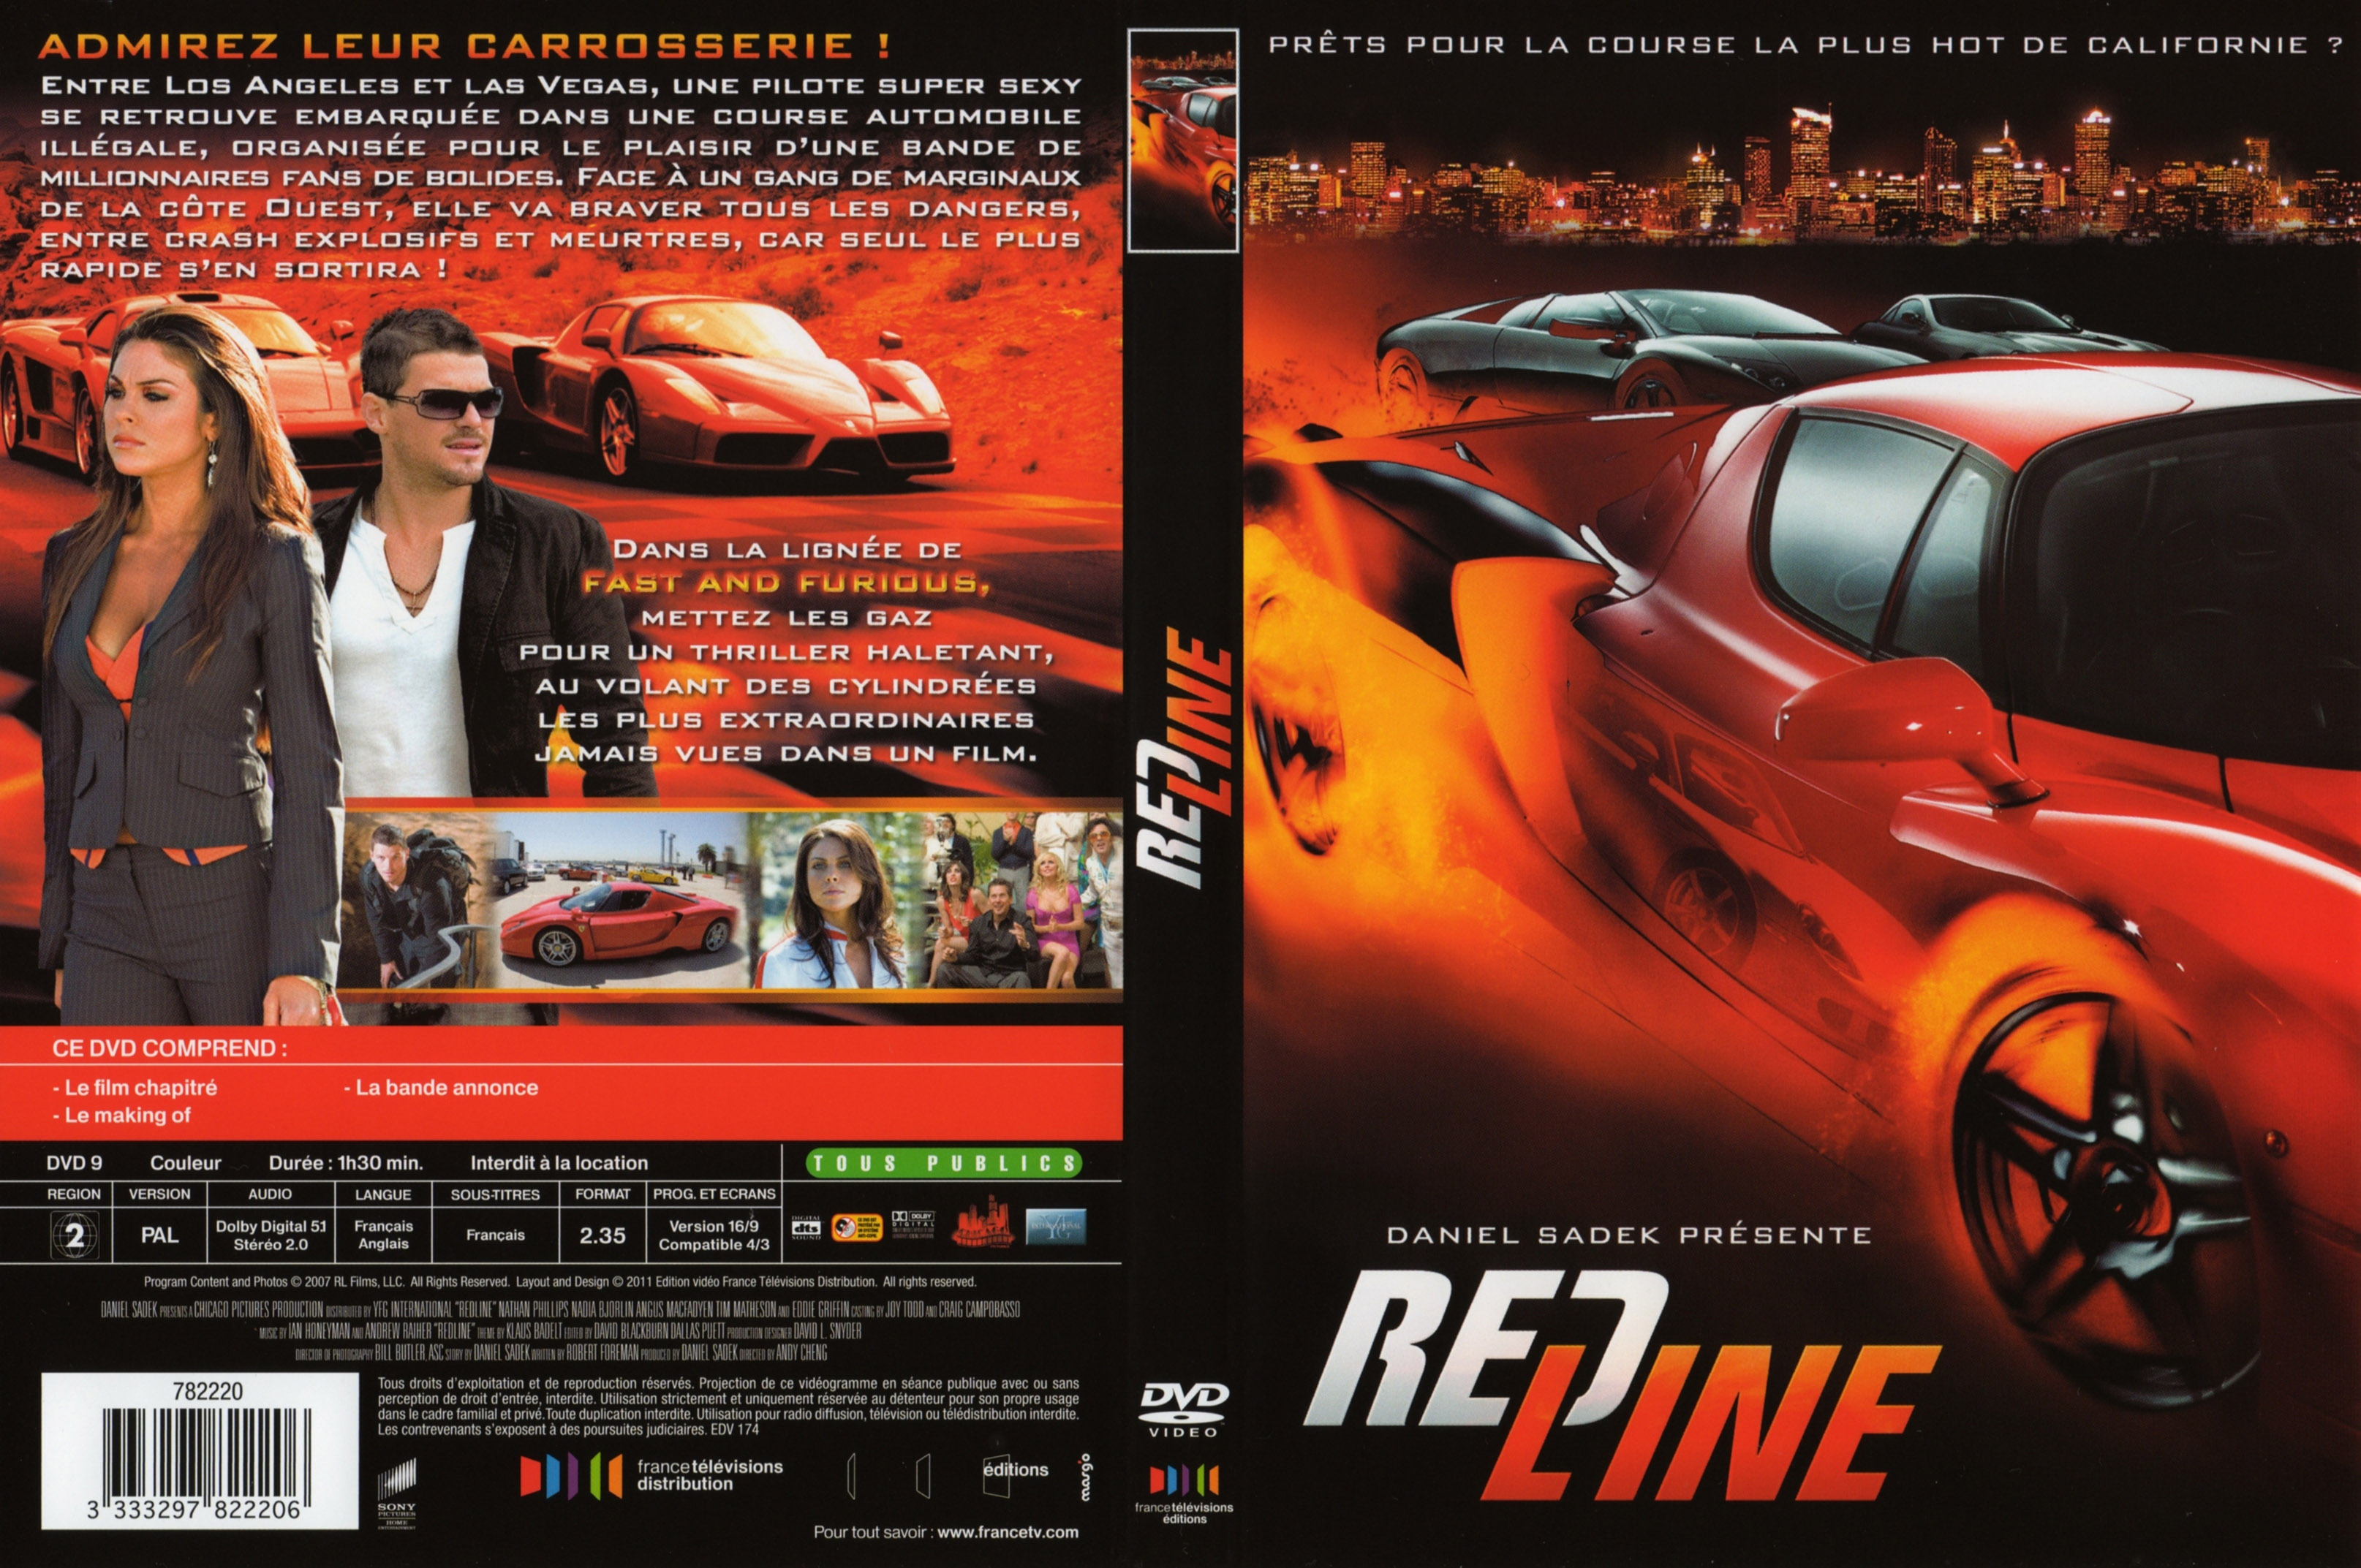 Jaquette DVD Redline